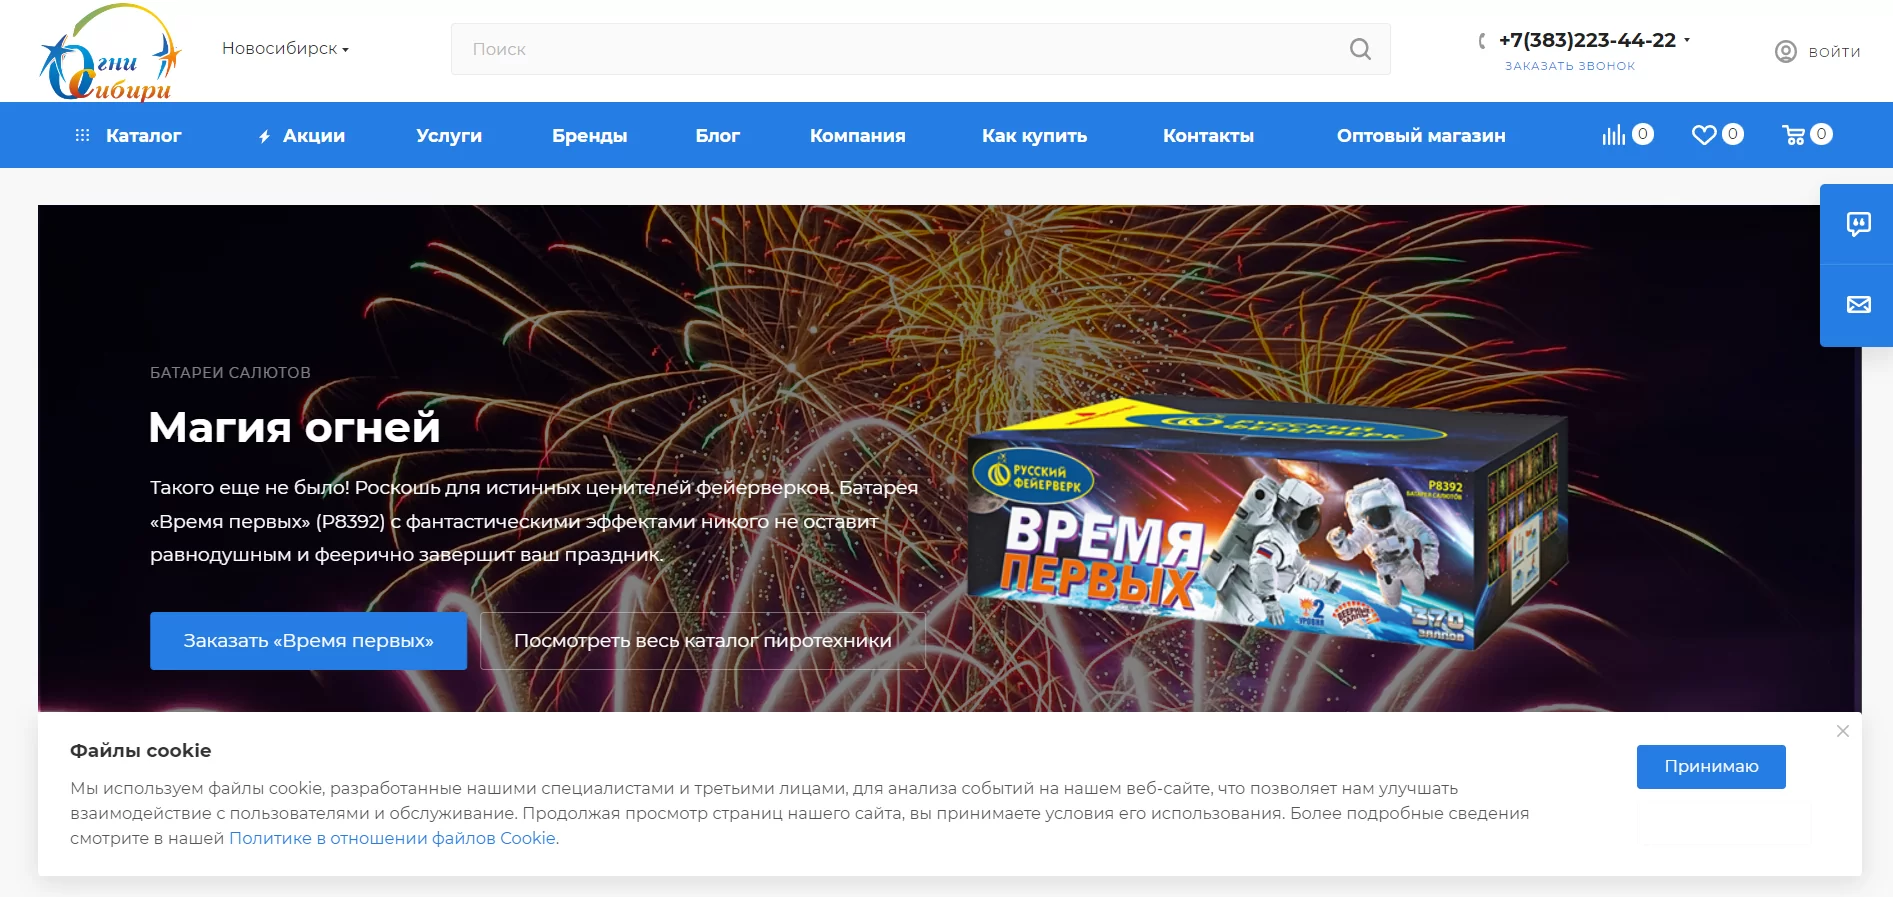 Интернет-магазин товаров для праздника Огни Сибири